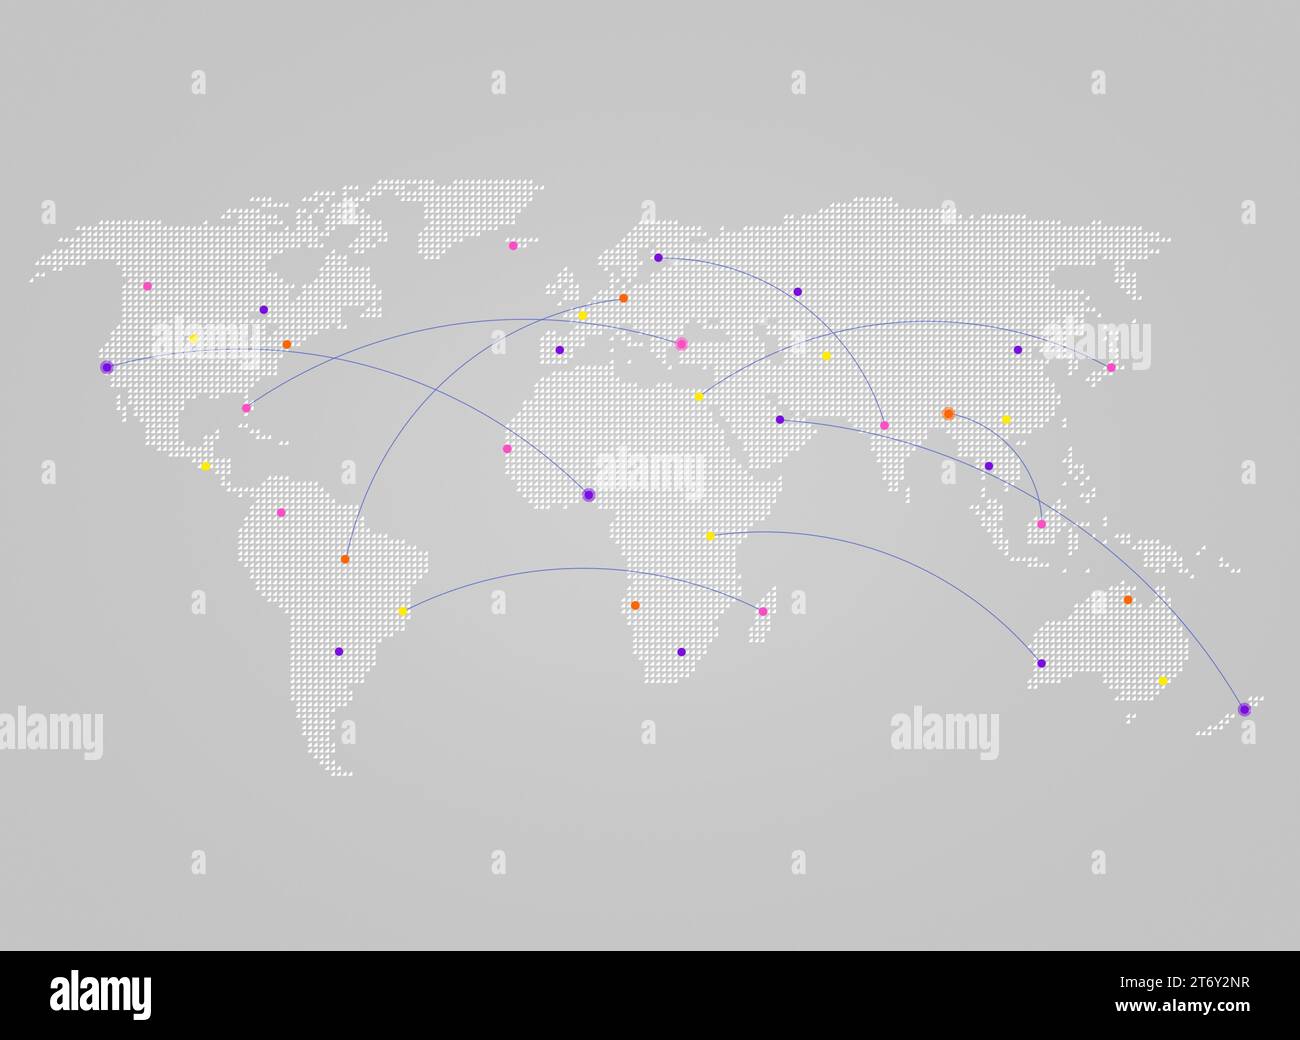 Mappa del mondo bianca composta da piccoli triangoli su sfondo grigio con linee curve o percorsi di volo che collegano punti colorati come città. Foto Stock